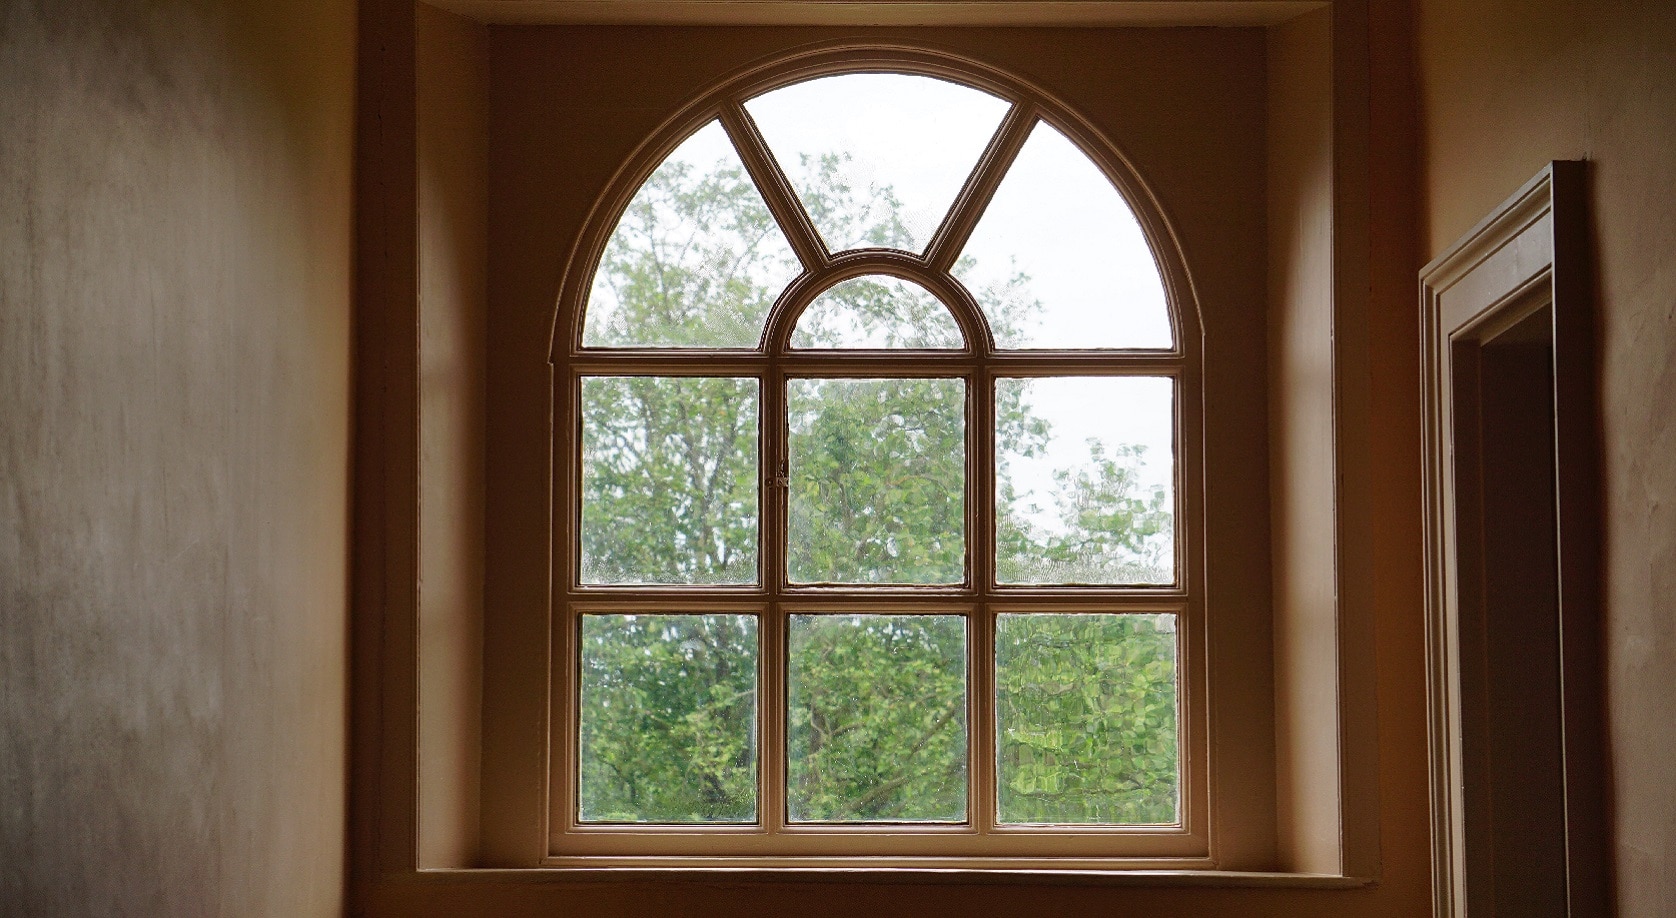 Fenêtres en PVC, aluminium et bois robuste